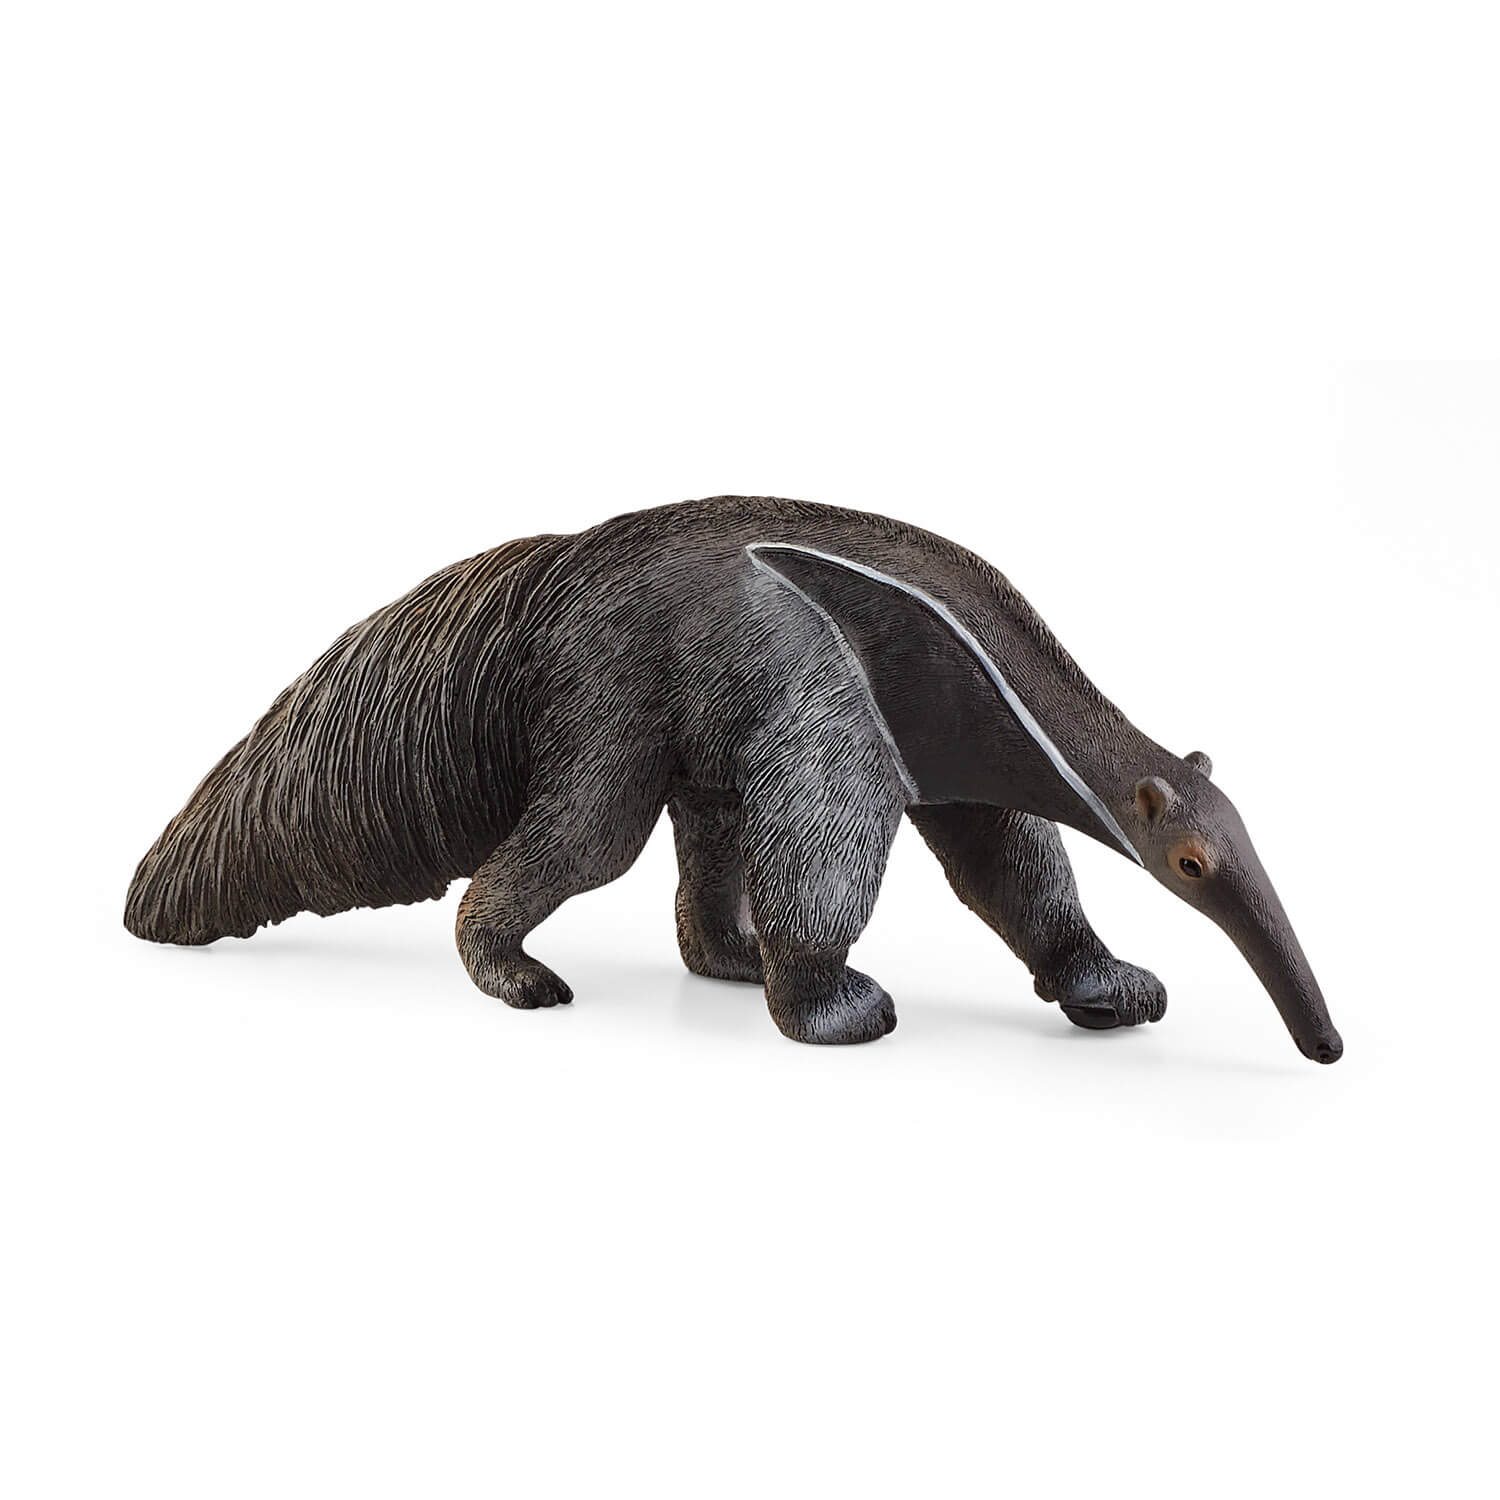 Schleich Wild Life Anteater Animal Figure (14844)